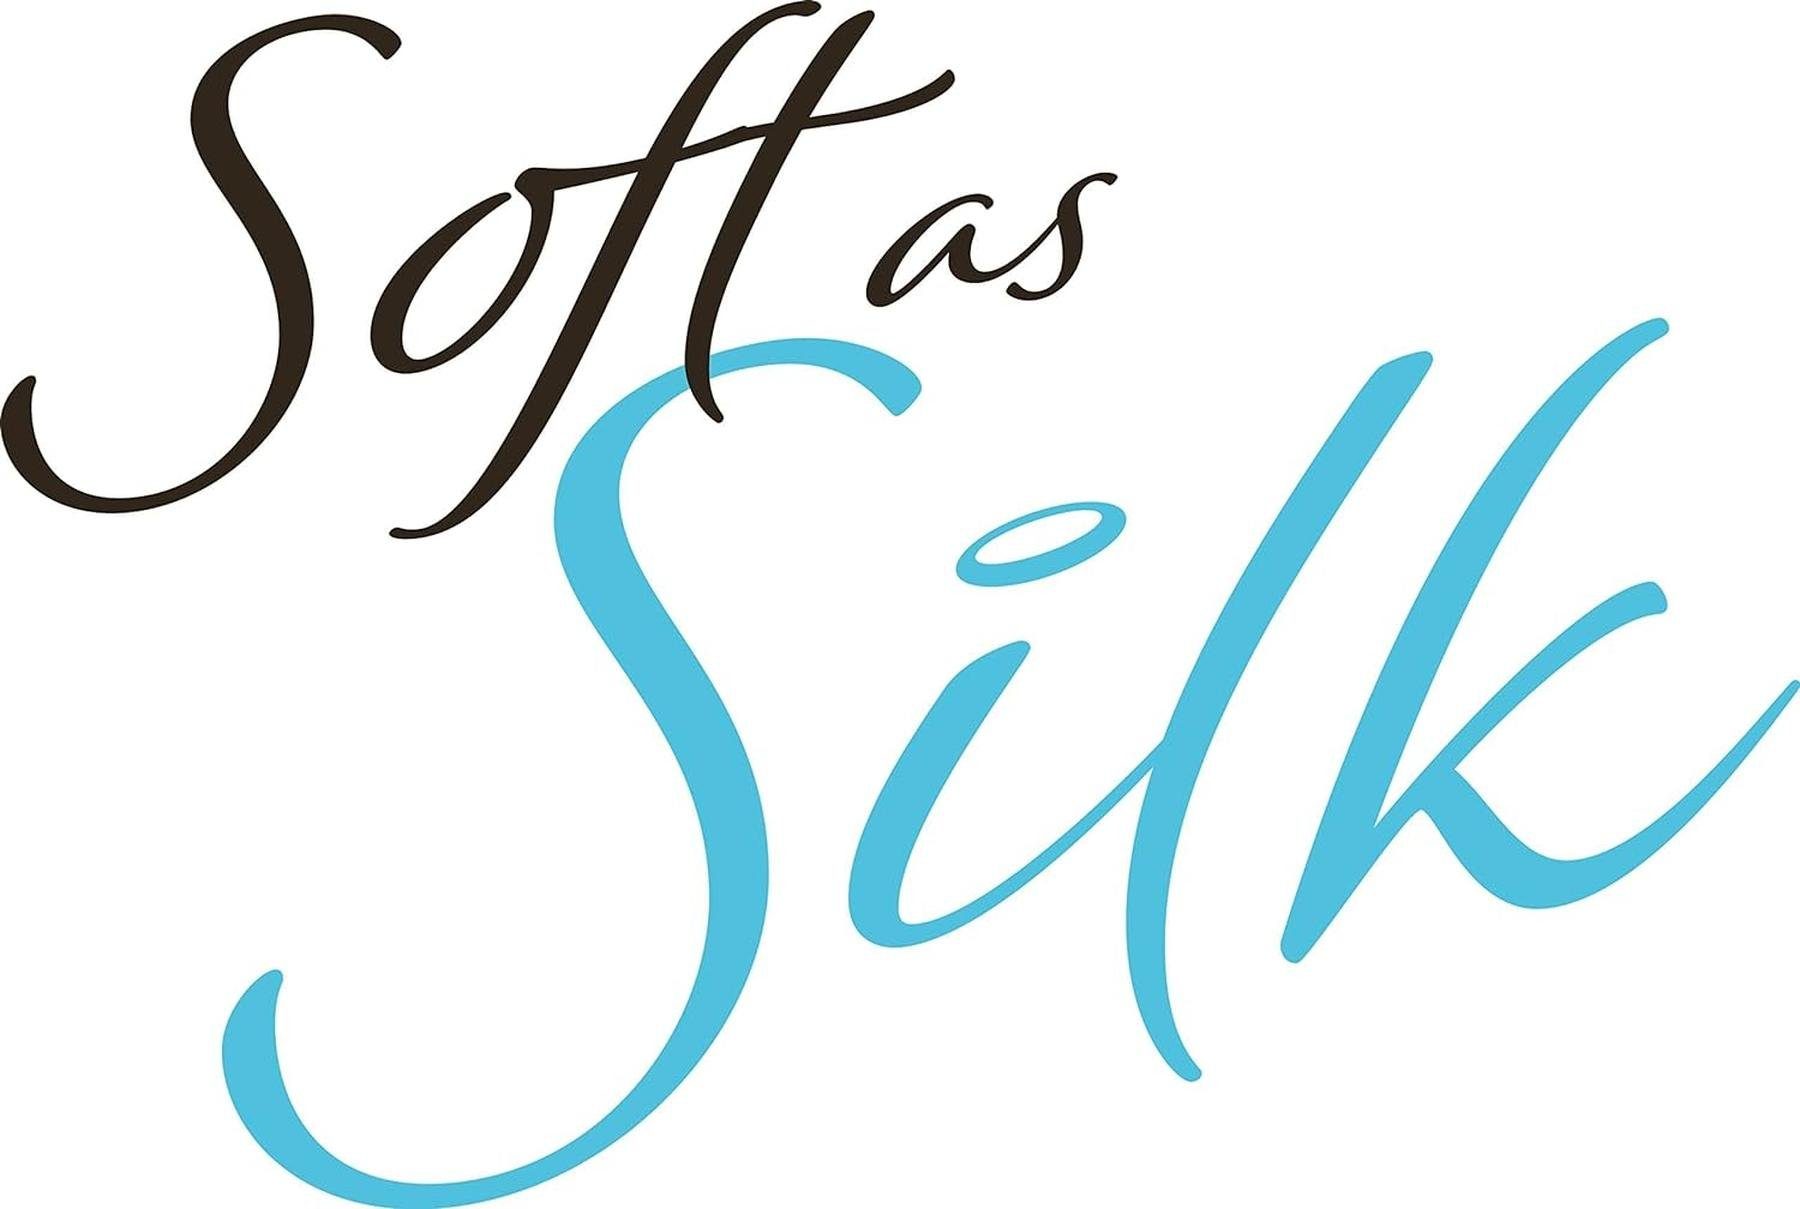 Silk as HoMedics mit Pediküreaufsatz Express Pedi Hornhautentferner Elektrischer HOMEDICS Soft